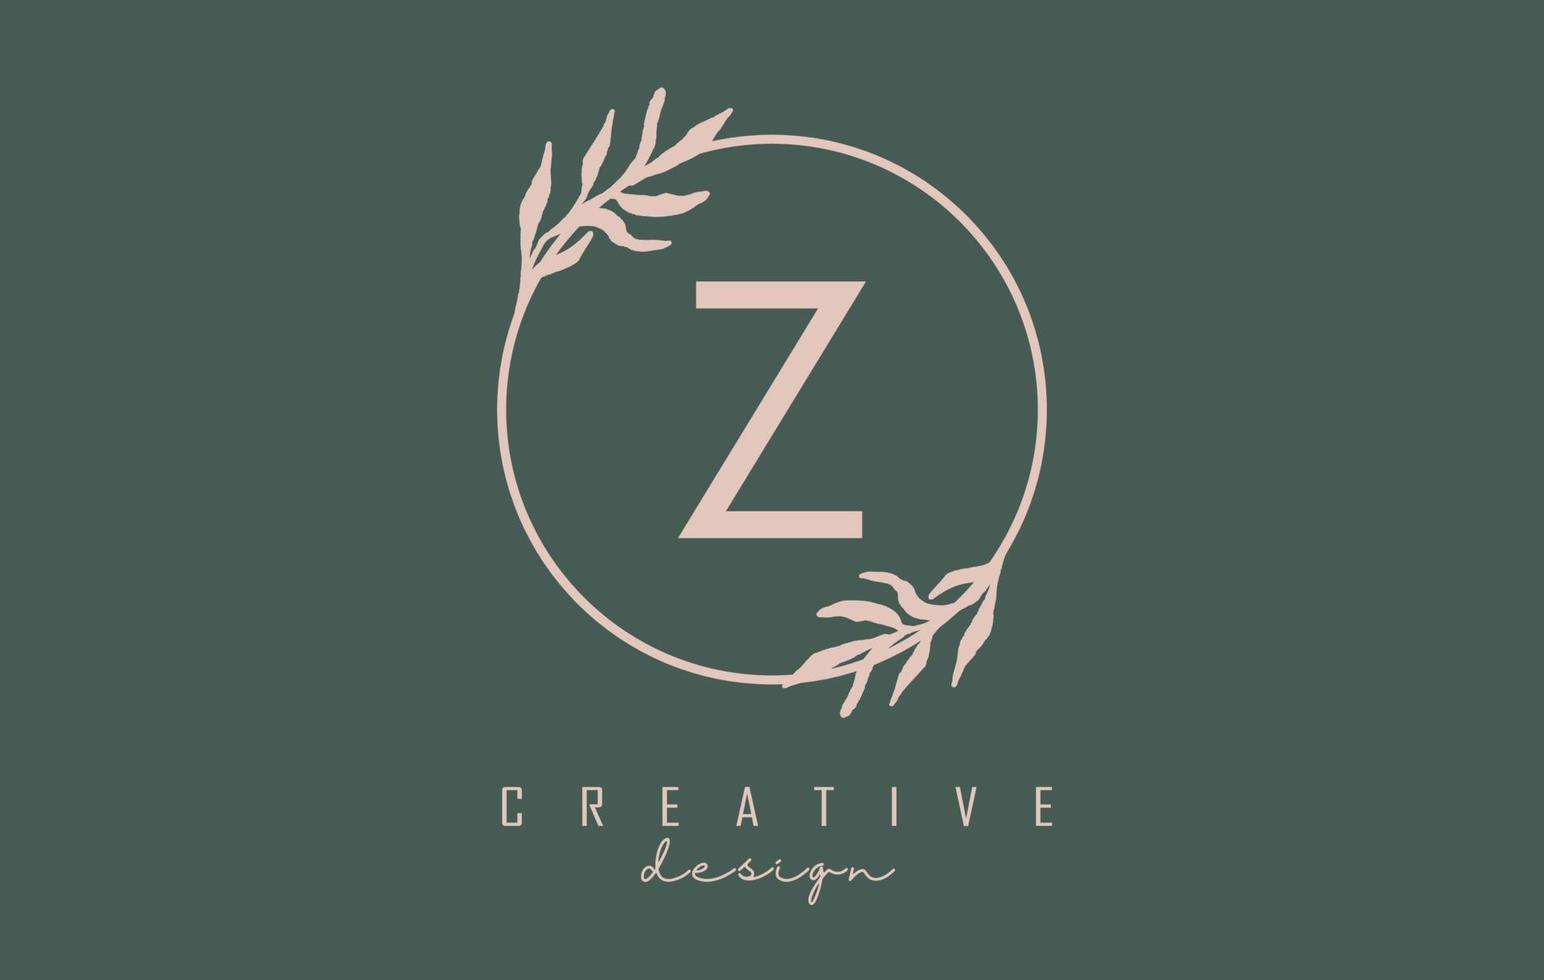 Logotipo de la letra z con marco de círculo y diseño de hojas de colores pastel. ilustración vectorial redondeada con letra z y hoja pastel. vector